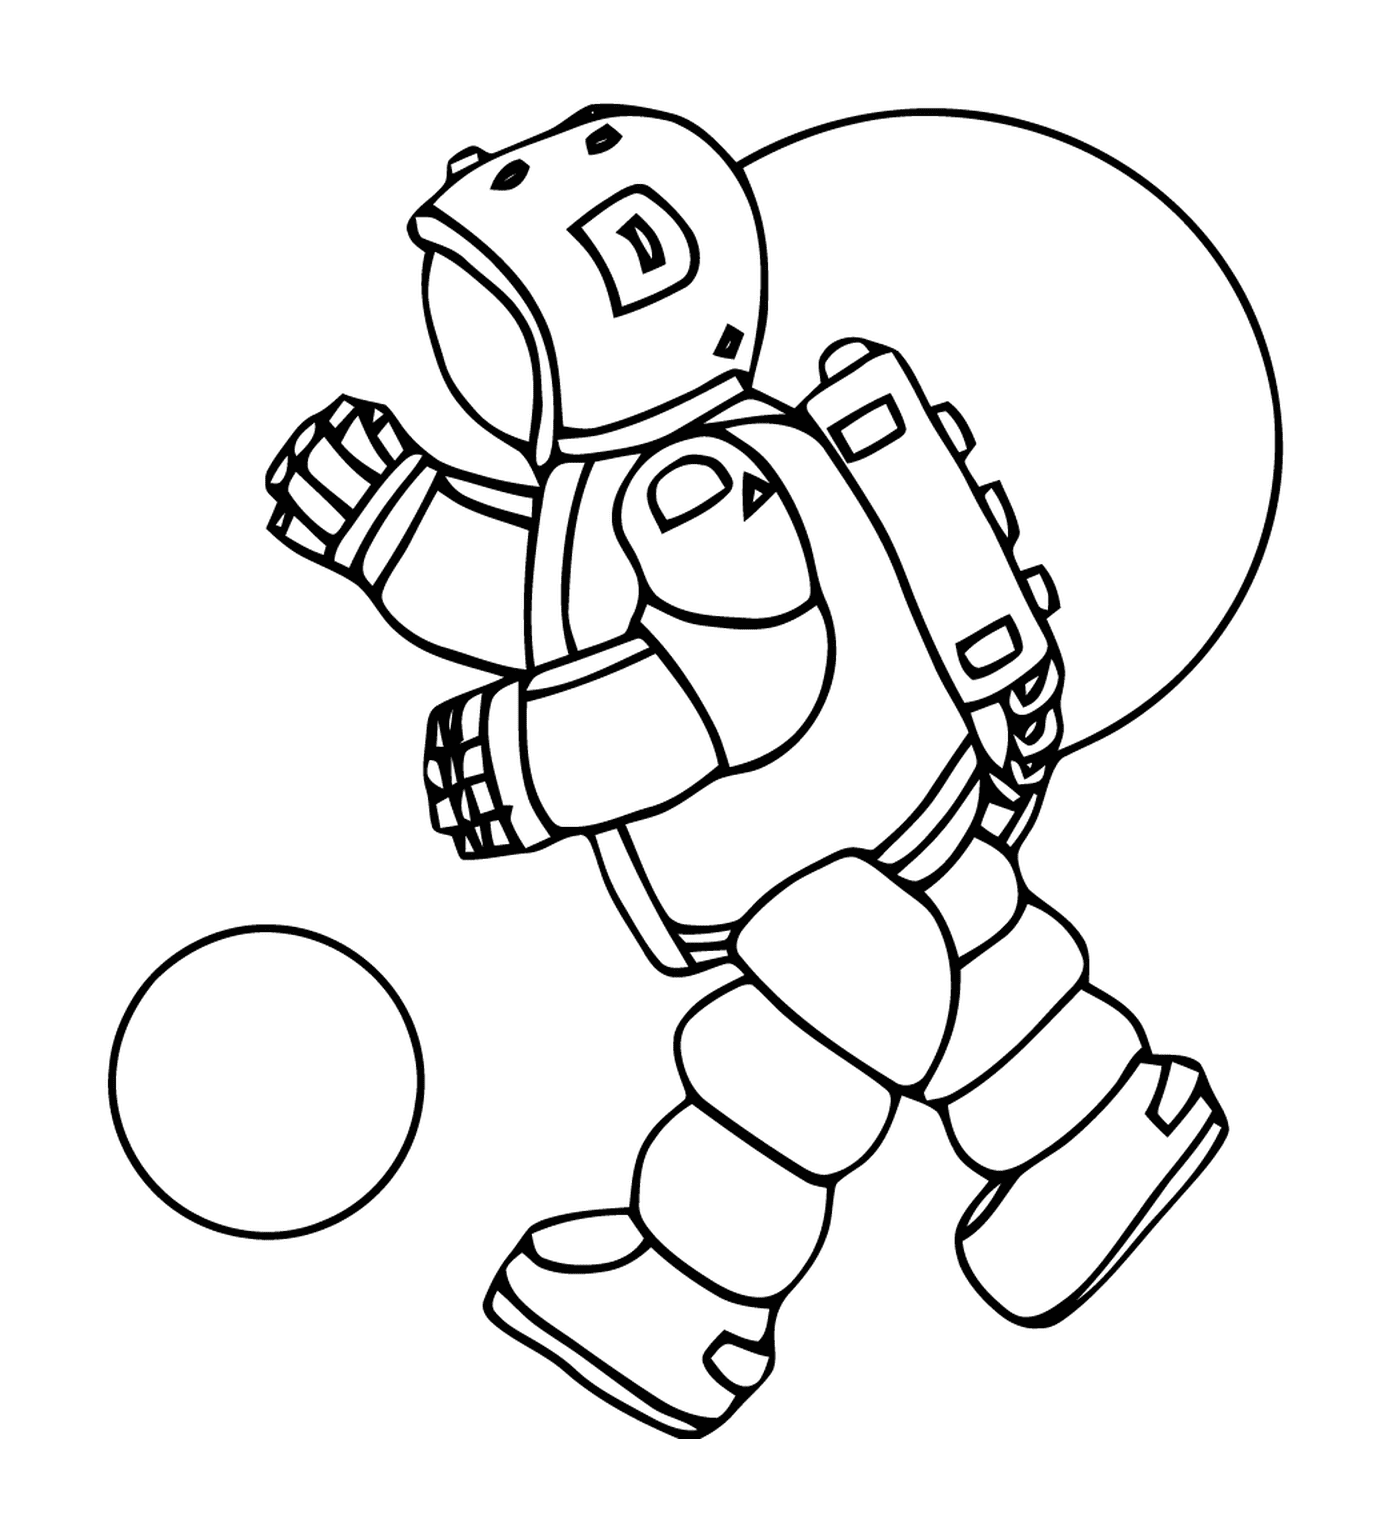   Astronaute jouant avec un ballon 